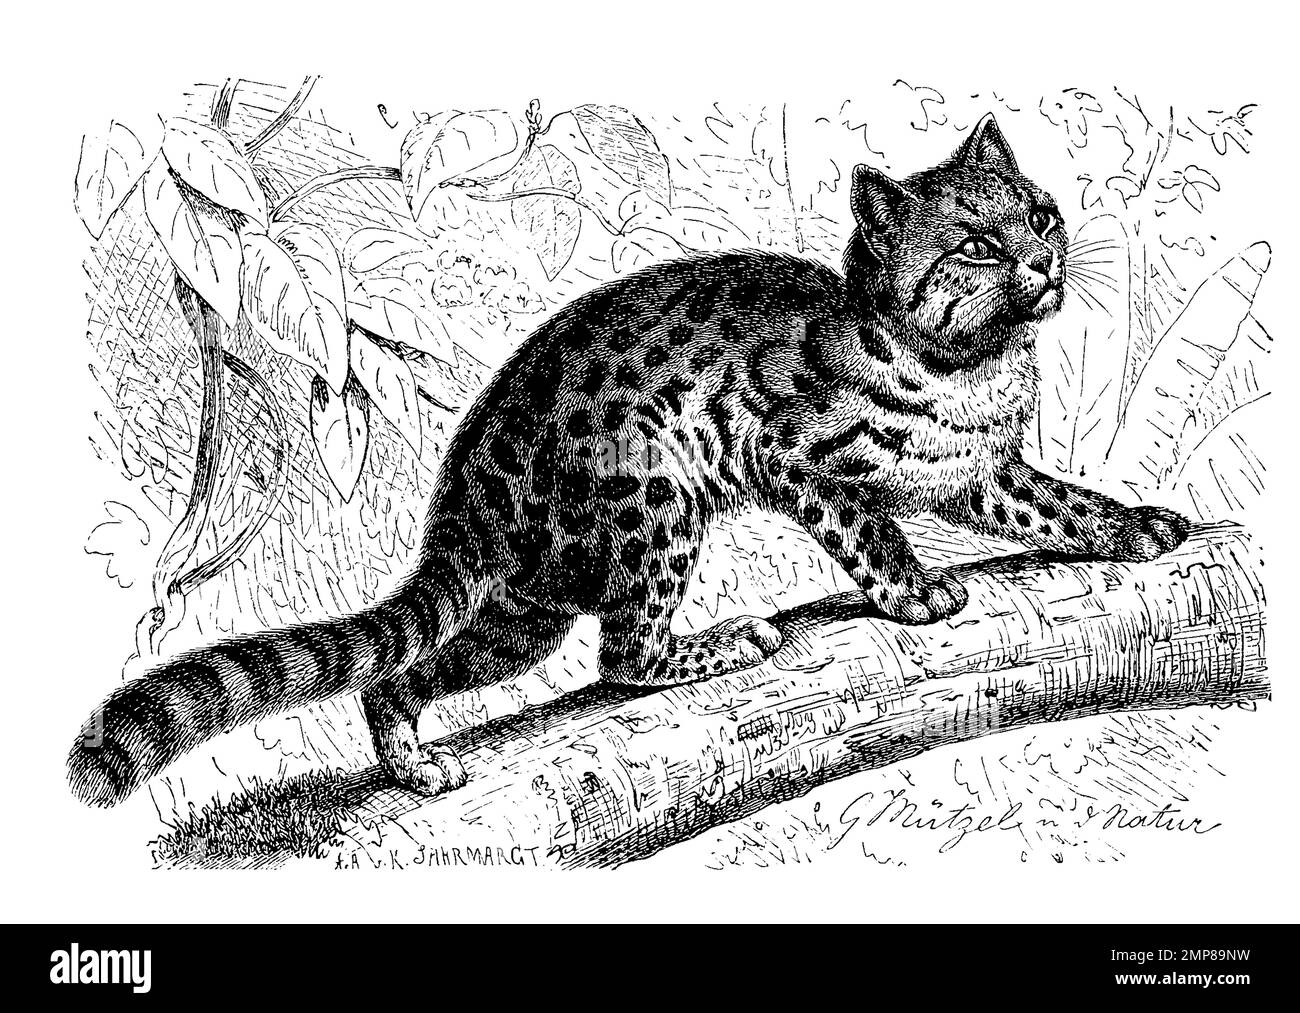 Nördliche Tigerkatze, Leopardus tigrinus, auch Nördliche Ozelotkatze genannt, eine südamerikanische Katzenart, digital restaurierte Reproduktion einer Originalvorlage aus dem 19. Jahrhundert, genaues Originaldatum nicht bekannt Stock Photo